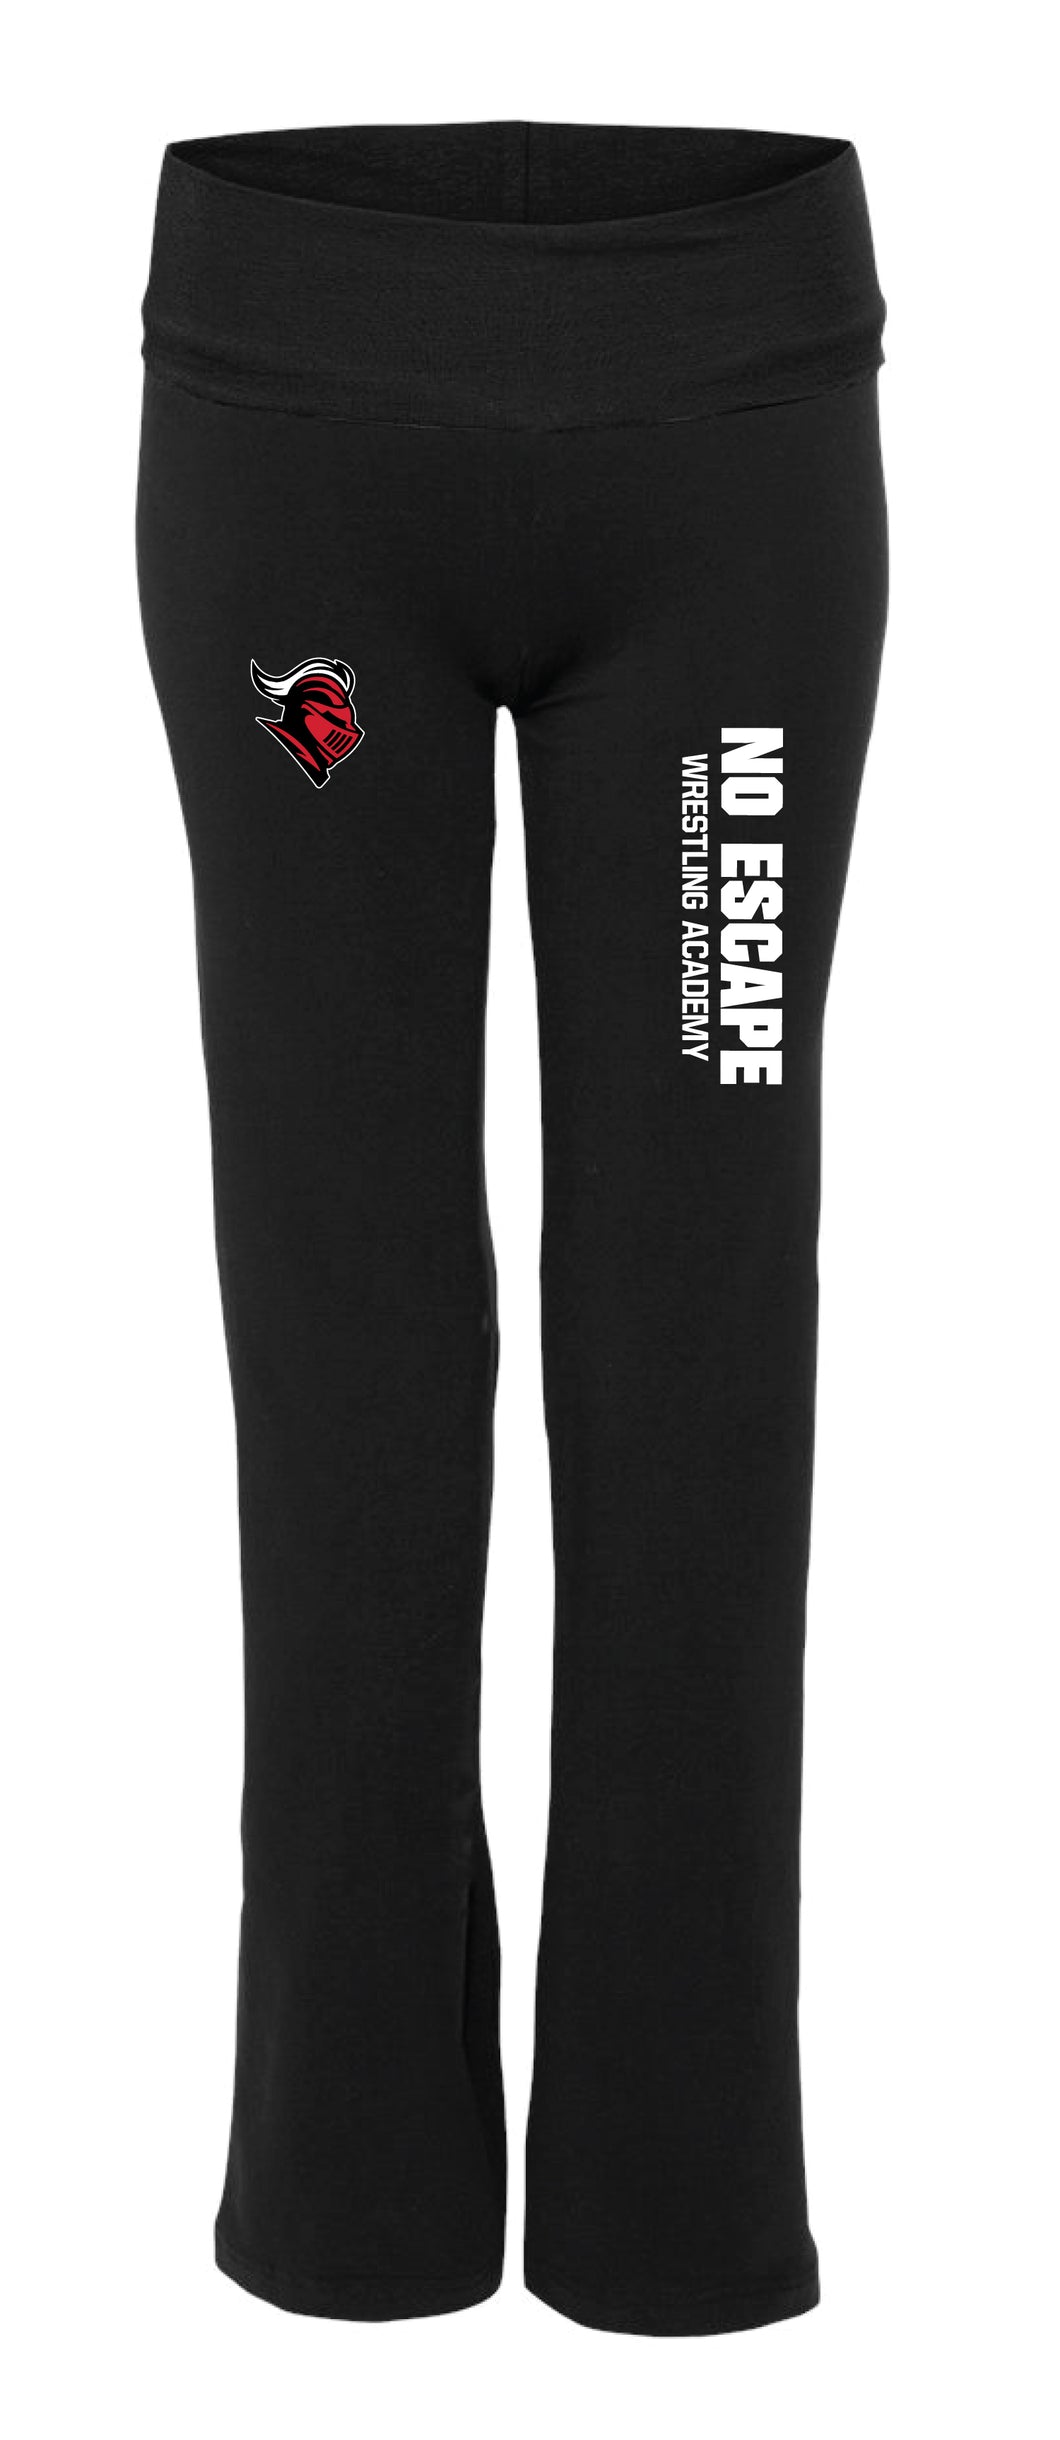 No Escape Wrestling Academy Women's  Yoga Pants - Black - 5KounT2018